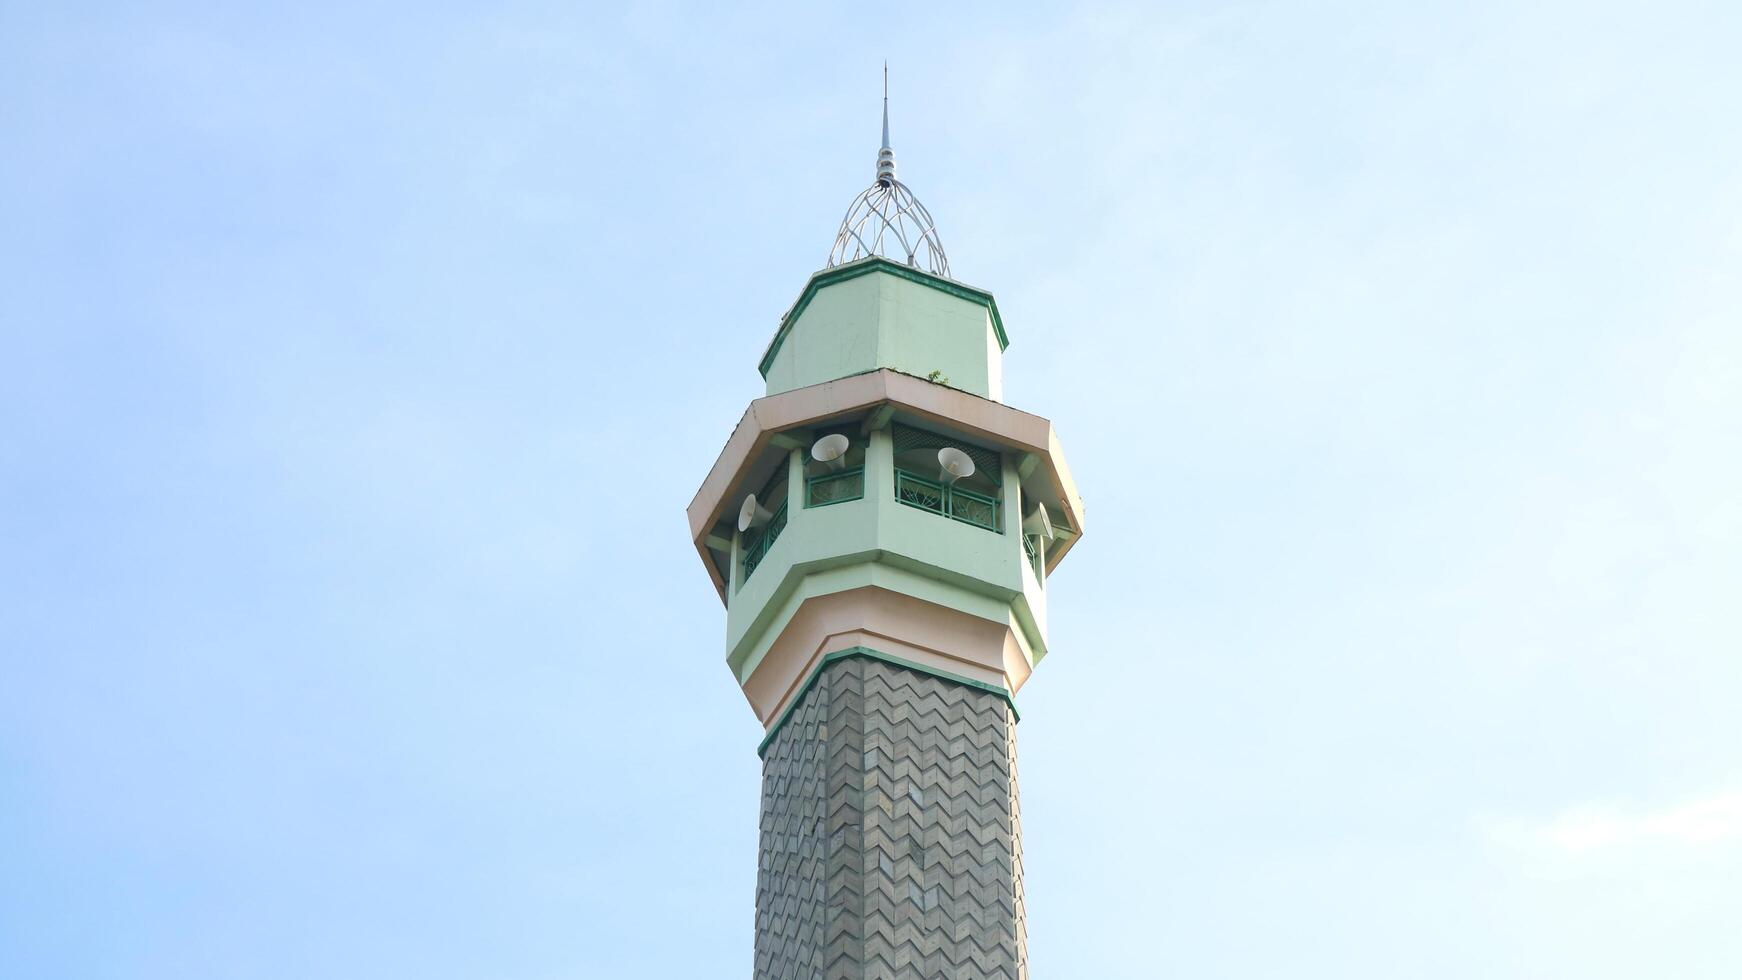 moskettorn foto med en himmel bakgrund